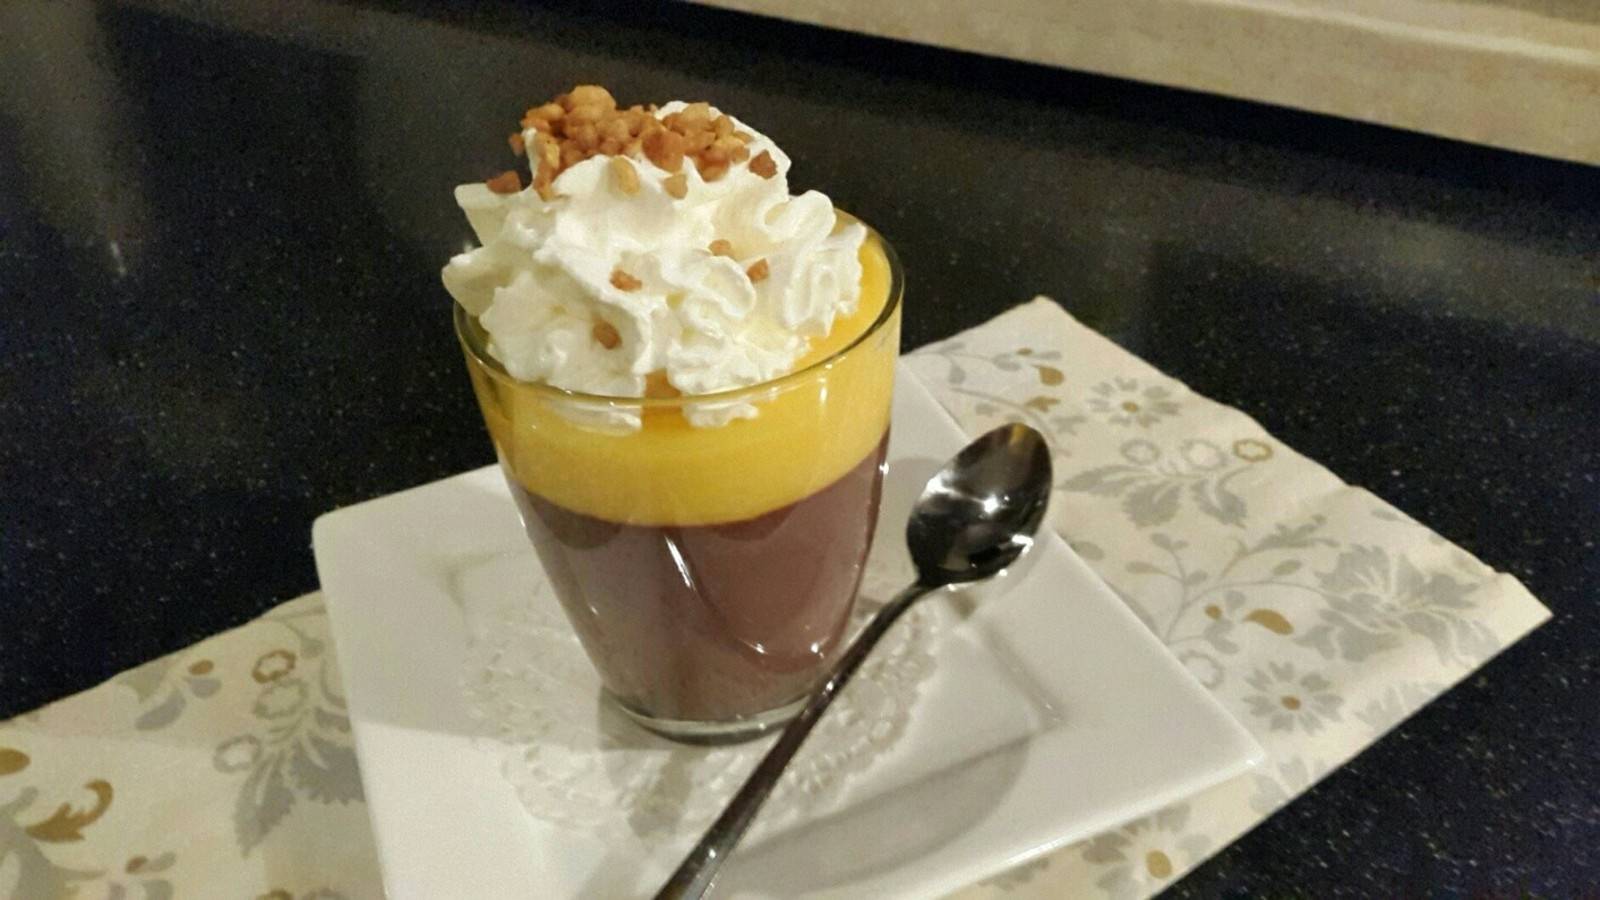 Schokoladenpudding mit Eierlikör und Vanilleeistopping